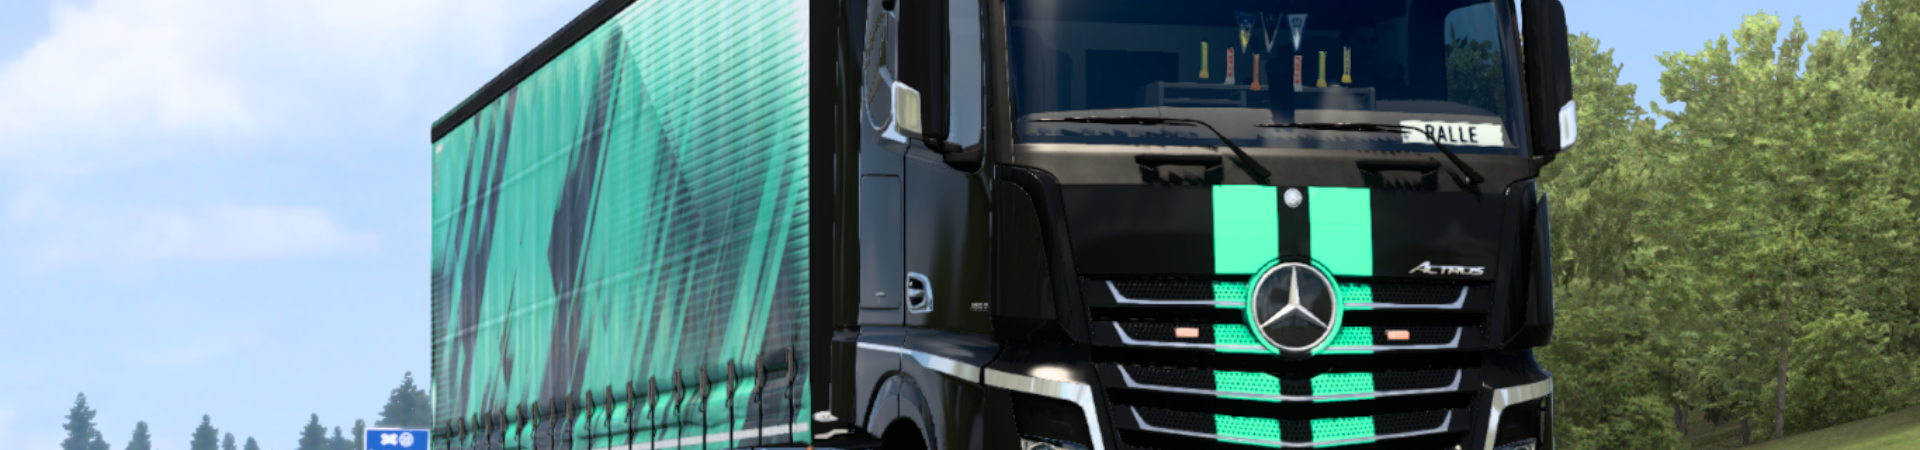 Ein LKW im Euro Truck Simulator 2 mit Lackierung im Design von simulator1